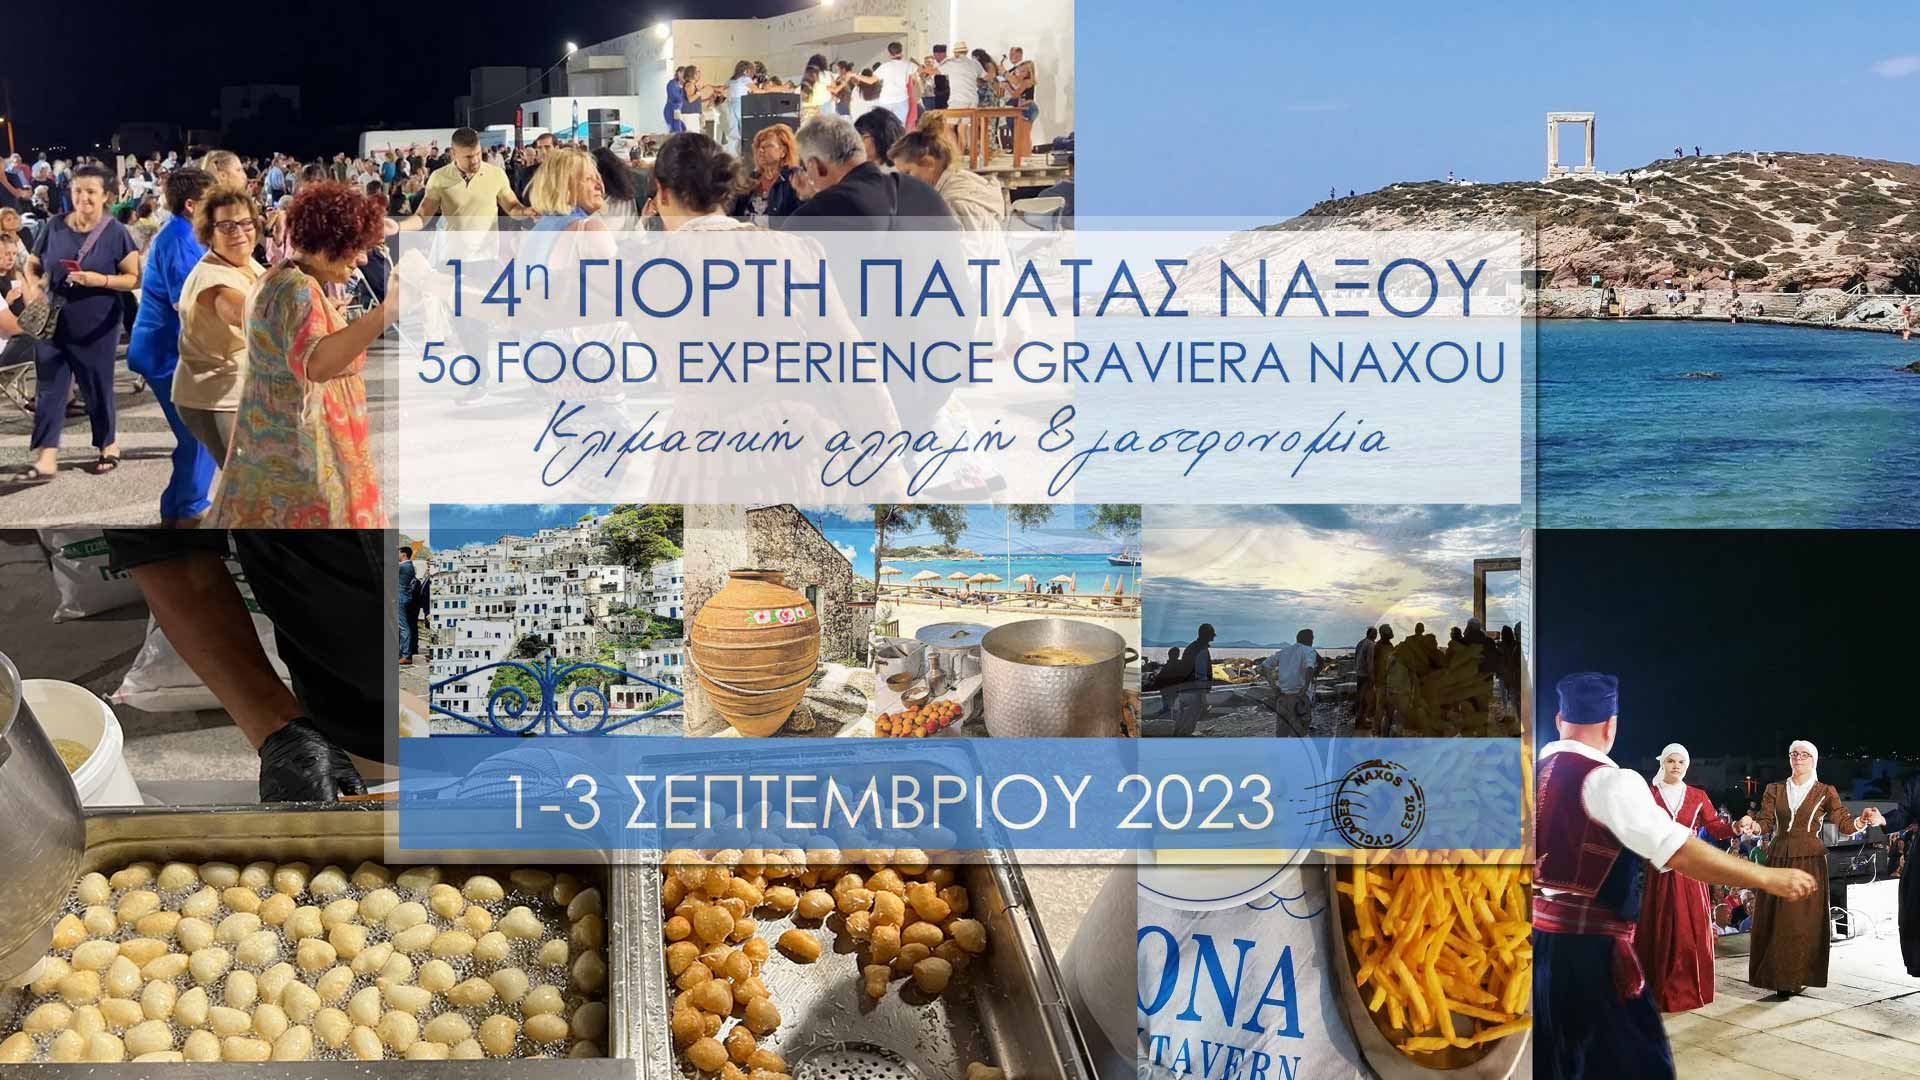 5ο Food Experience Graviera Naxos 2023 και 14η Γιορτή Πατάτας Νάξου - Με μεγάλη επιτυχία ολοκληρώθηκαν οι εκδηλώσεις